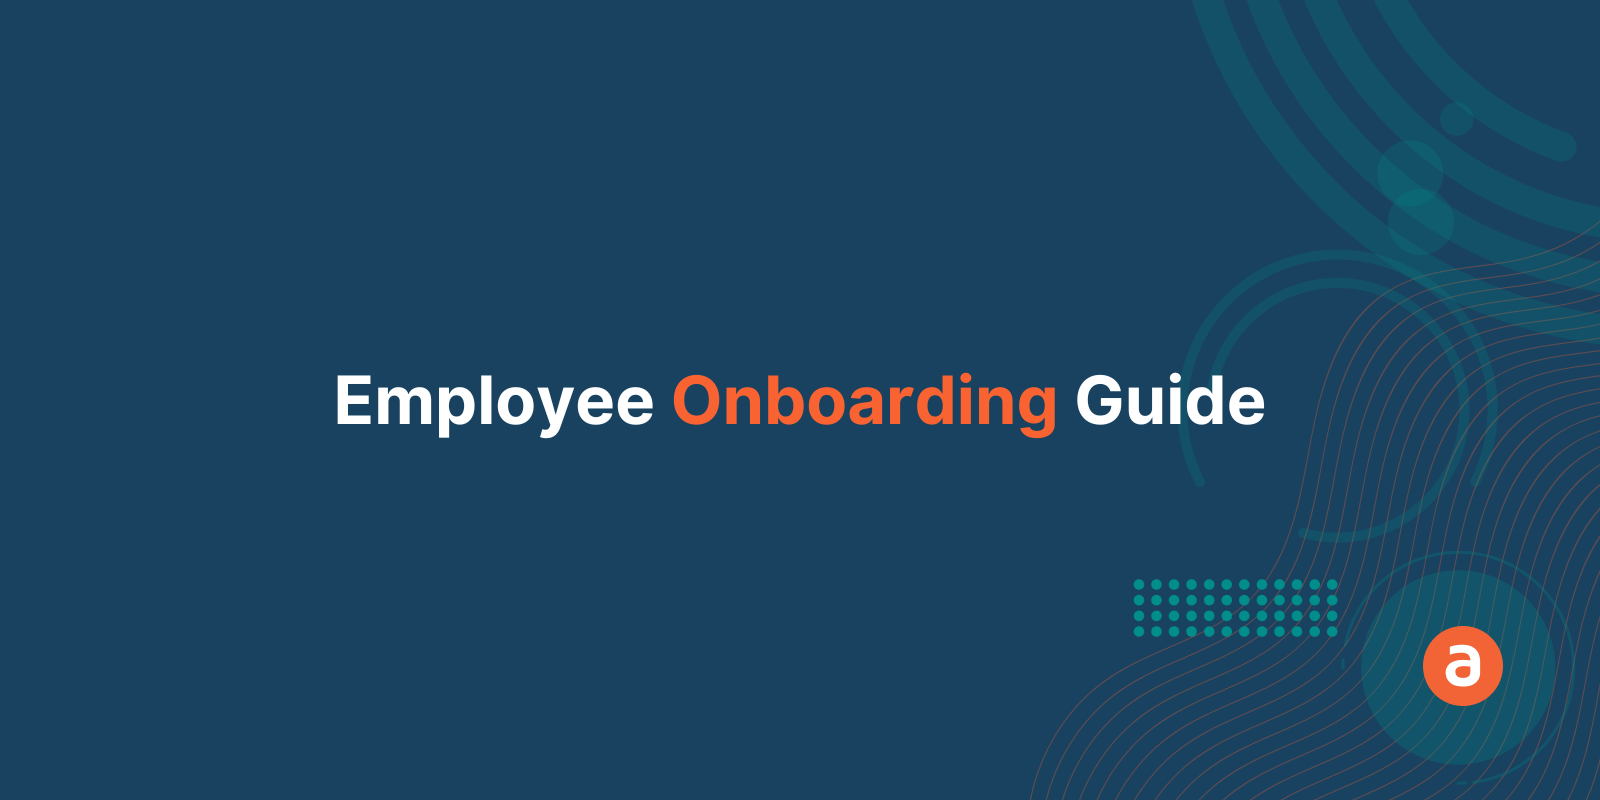 Employee Onboarding Guide